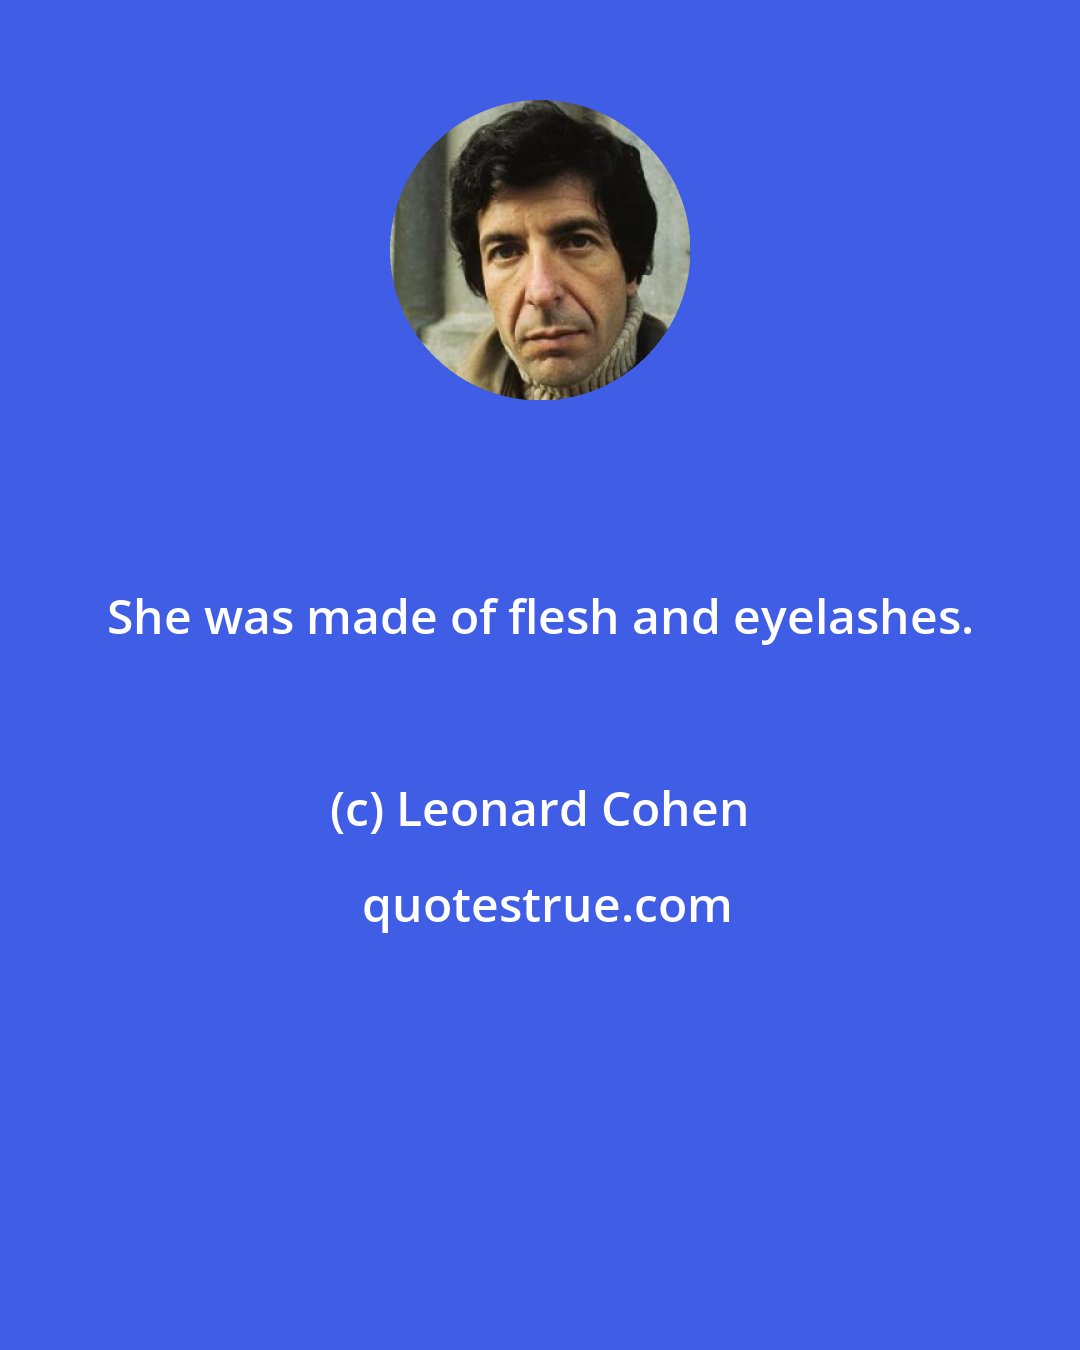 Leonard Cohen: She was made of flesh and eyelashes.